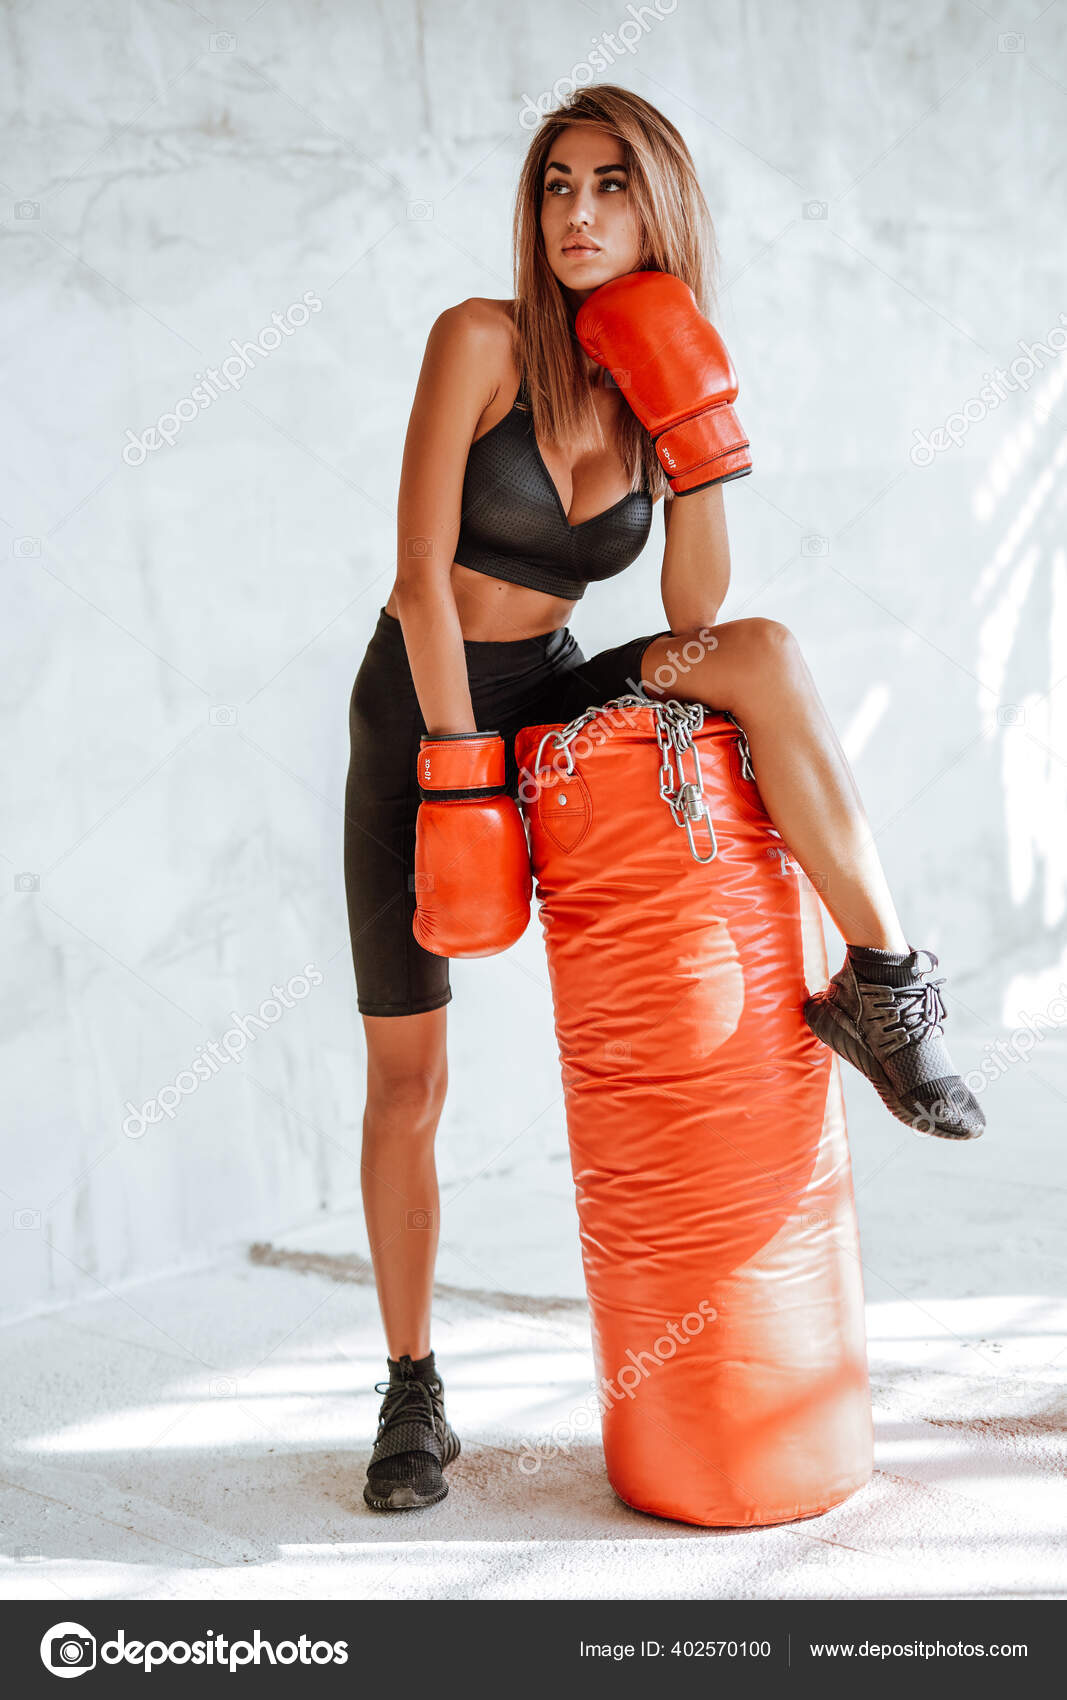 Chica muy bonita en un chándal negro con un saco de boxeo y guantes de boxeo:  fotografía de stock © fxquadro #402570100